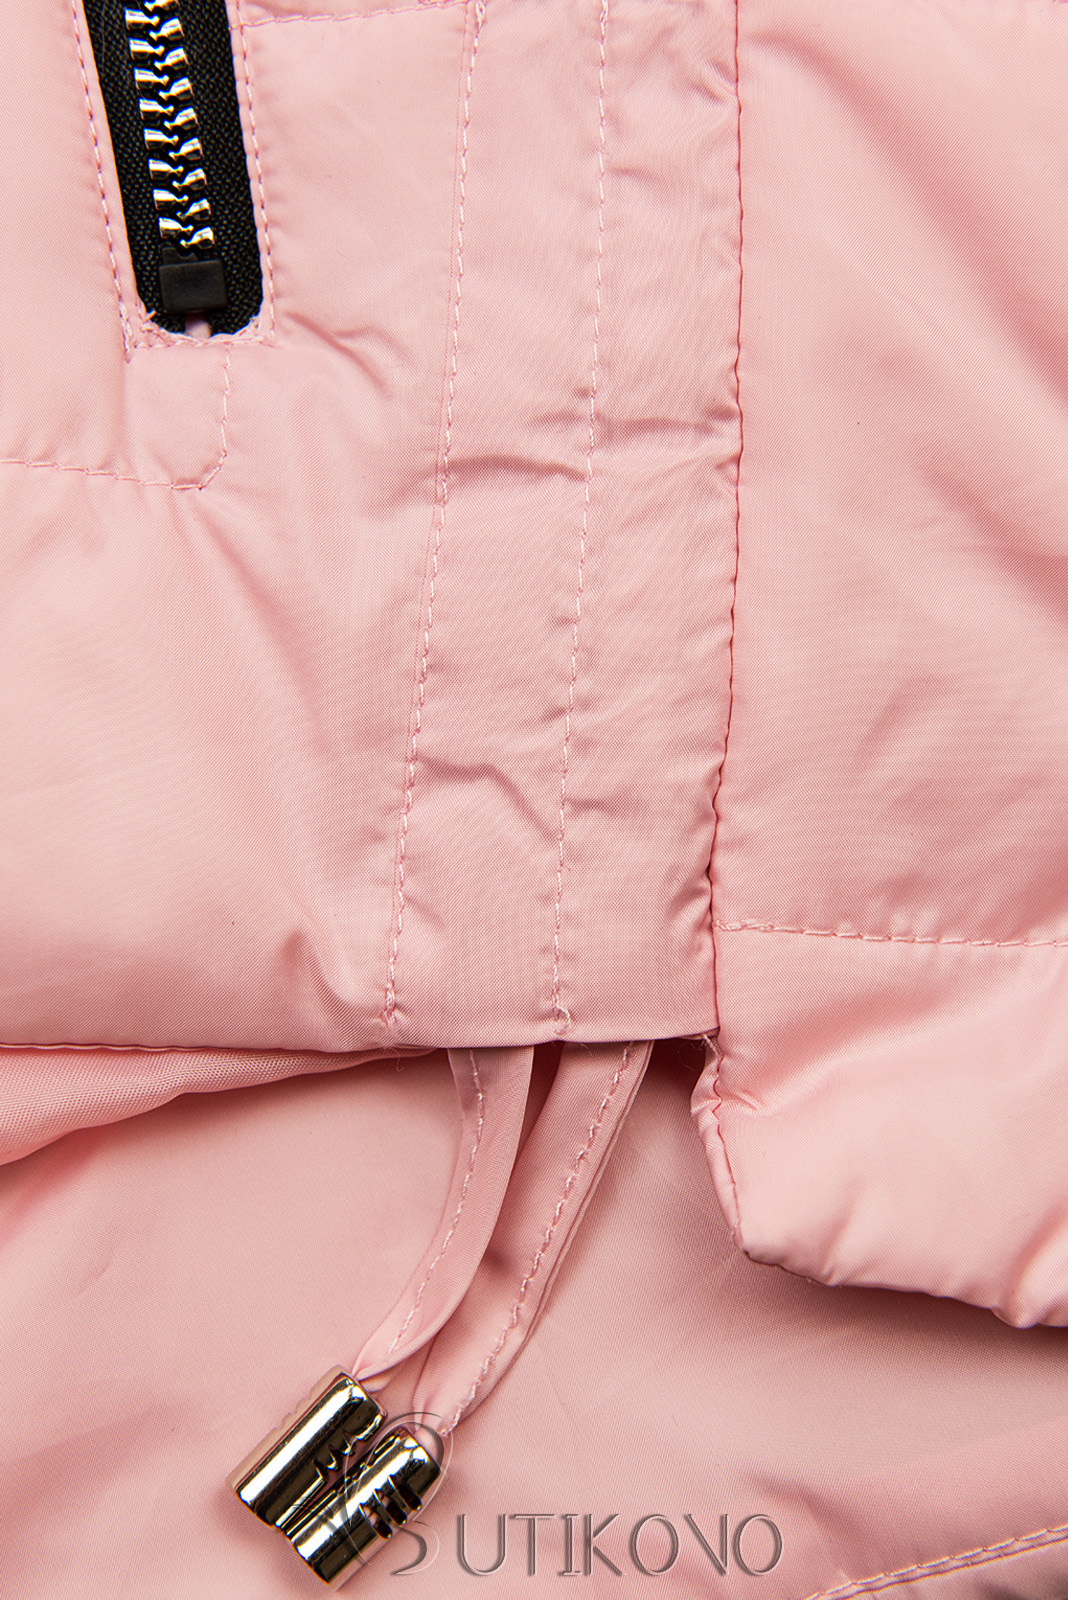 Růžová bunda s kapucí